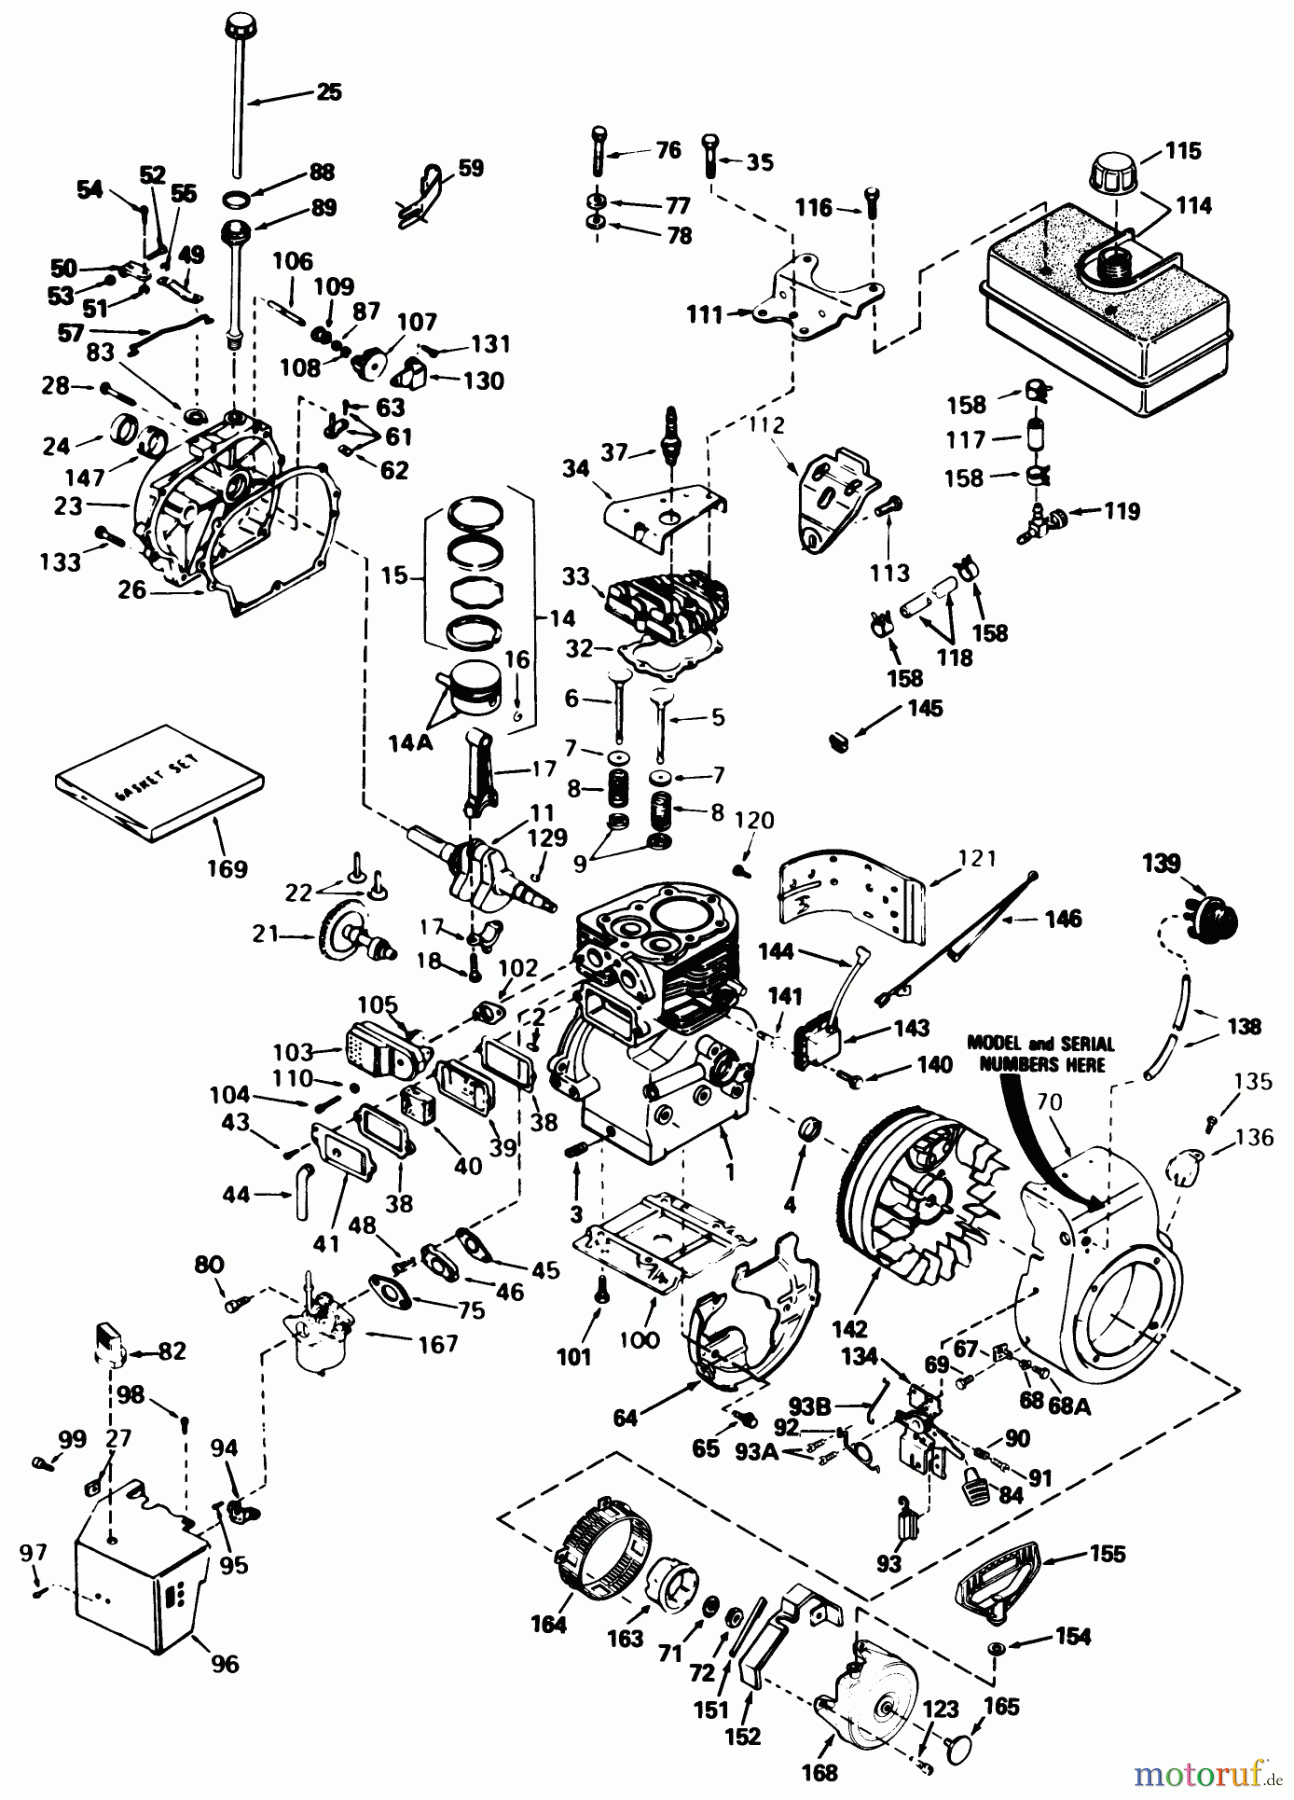  Toro Neu Snow Blowers/Snow Throwers Seite 1 38513 (624) - Toro 624 Power Shift Snowthrower, 1990 (0000001-0999999) ENGINE TECUMSEH MODEL NO. H60-75504W